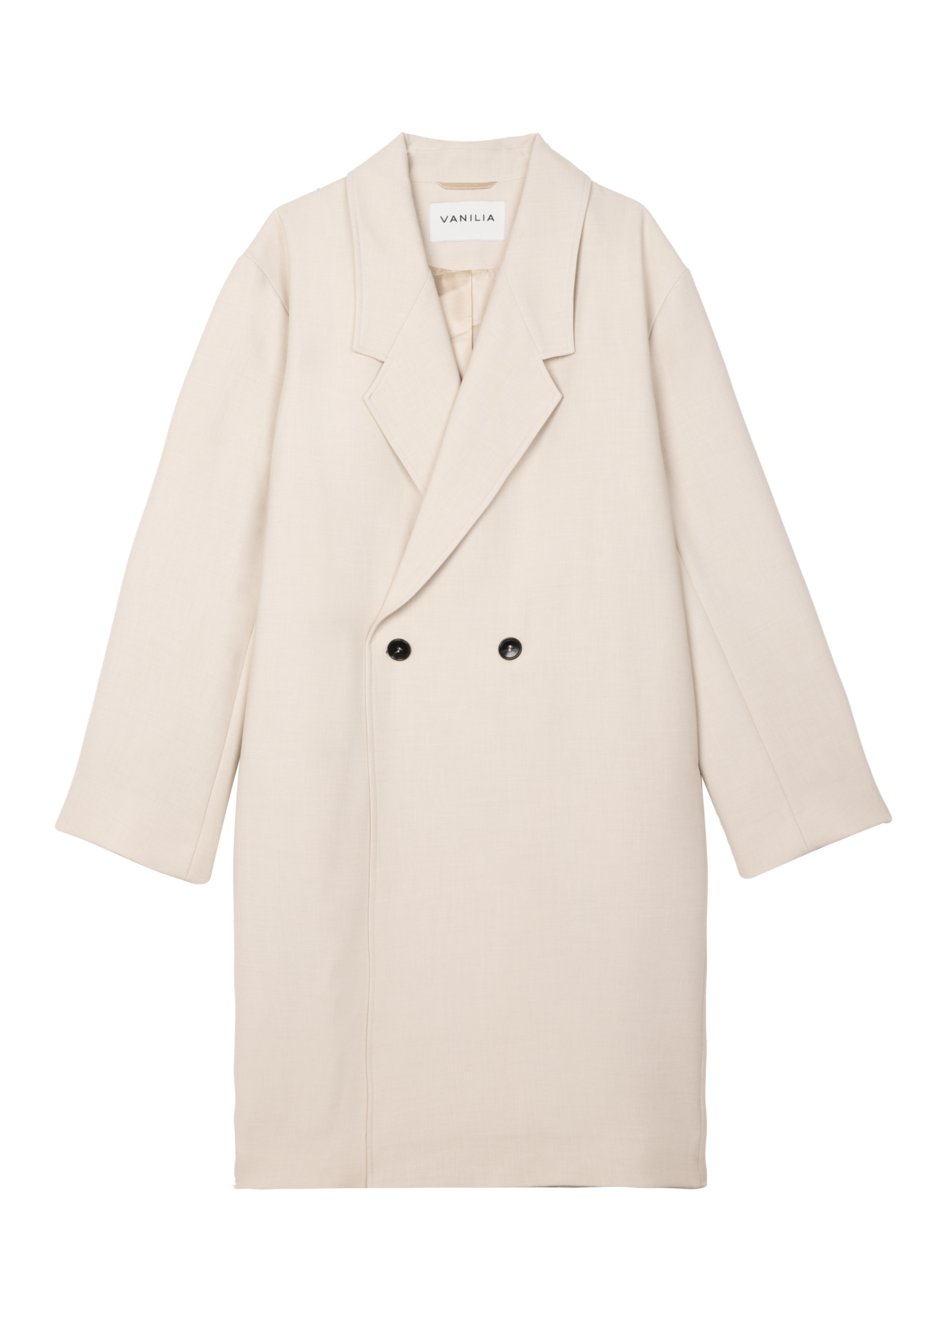 Aanbieding van Clean solid overcoat voor 299,95€ bij Vanilia